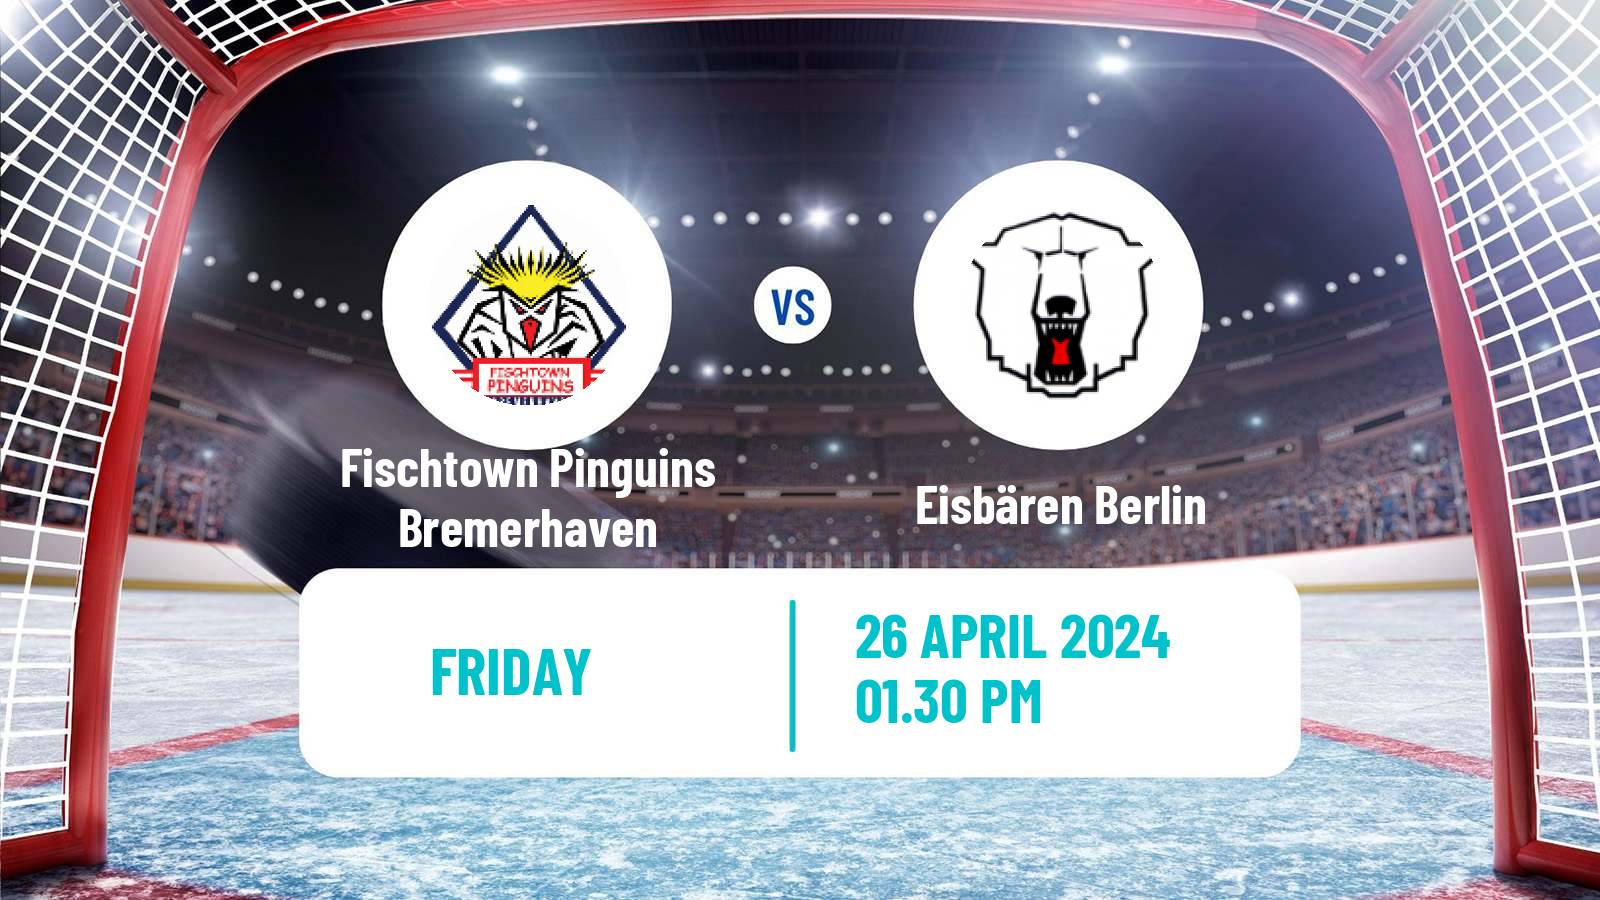 Hockey German Ice Hockey League Fischtown Pinguins Bremerhaven - Eisbären Berlin